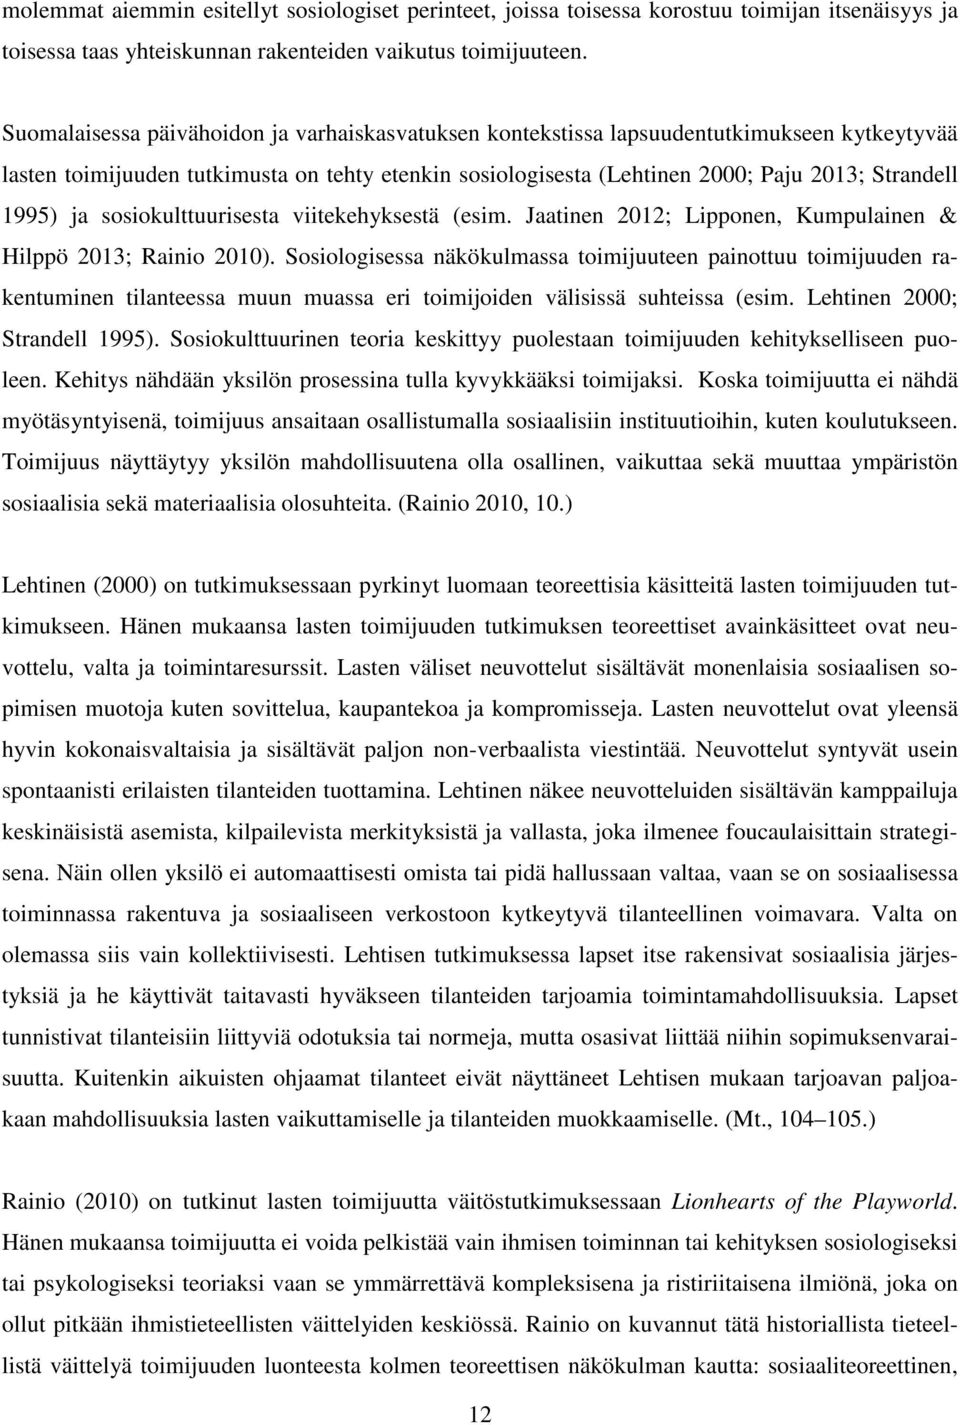 ja sosiokulttuurisesta viitekehyksestä (esim. Jaatinen 2012; Lipponen, Kumpulainen & Hilppö 2013; Rainio 2010).